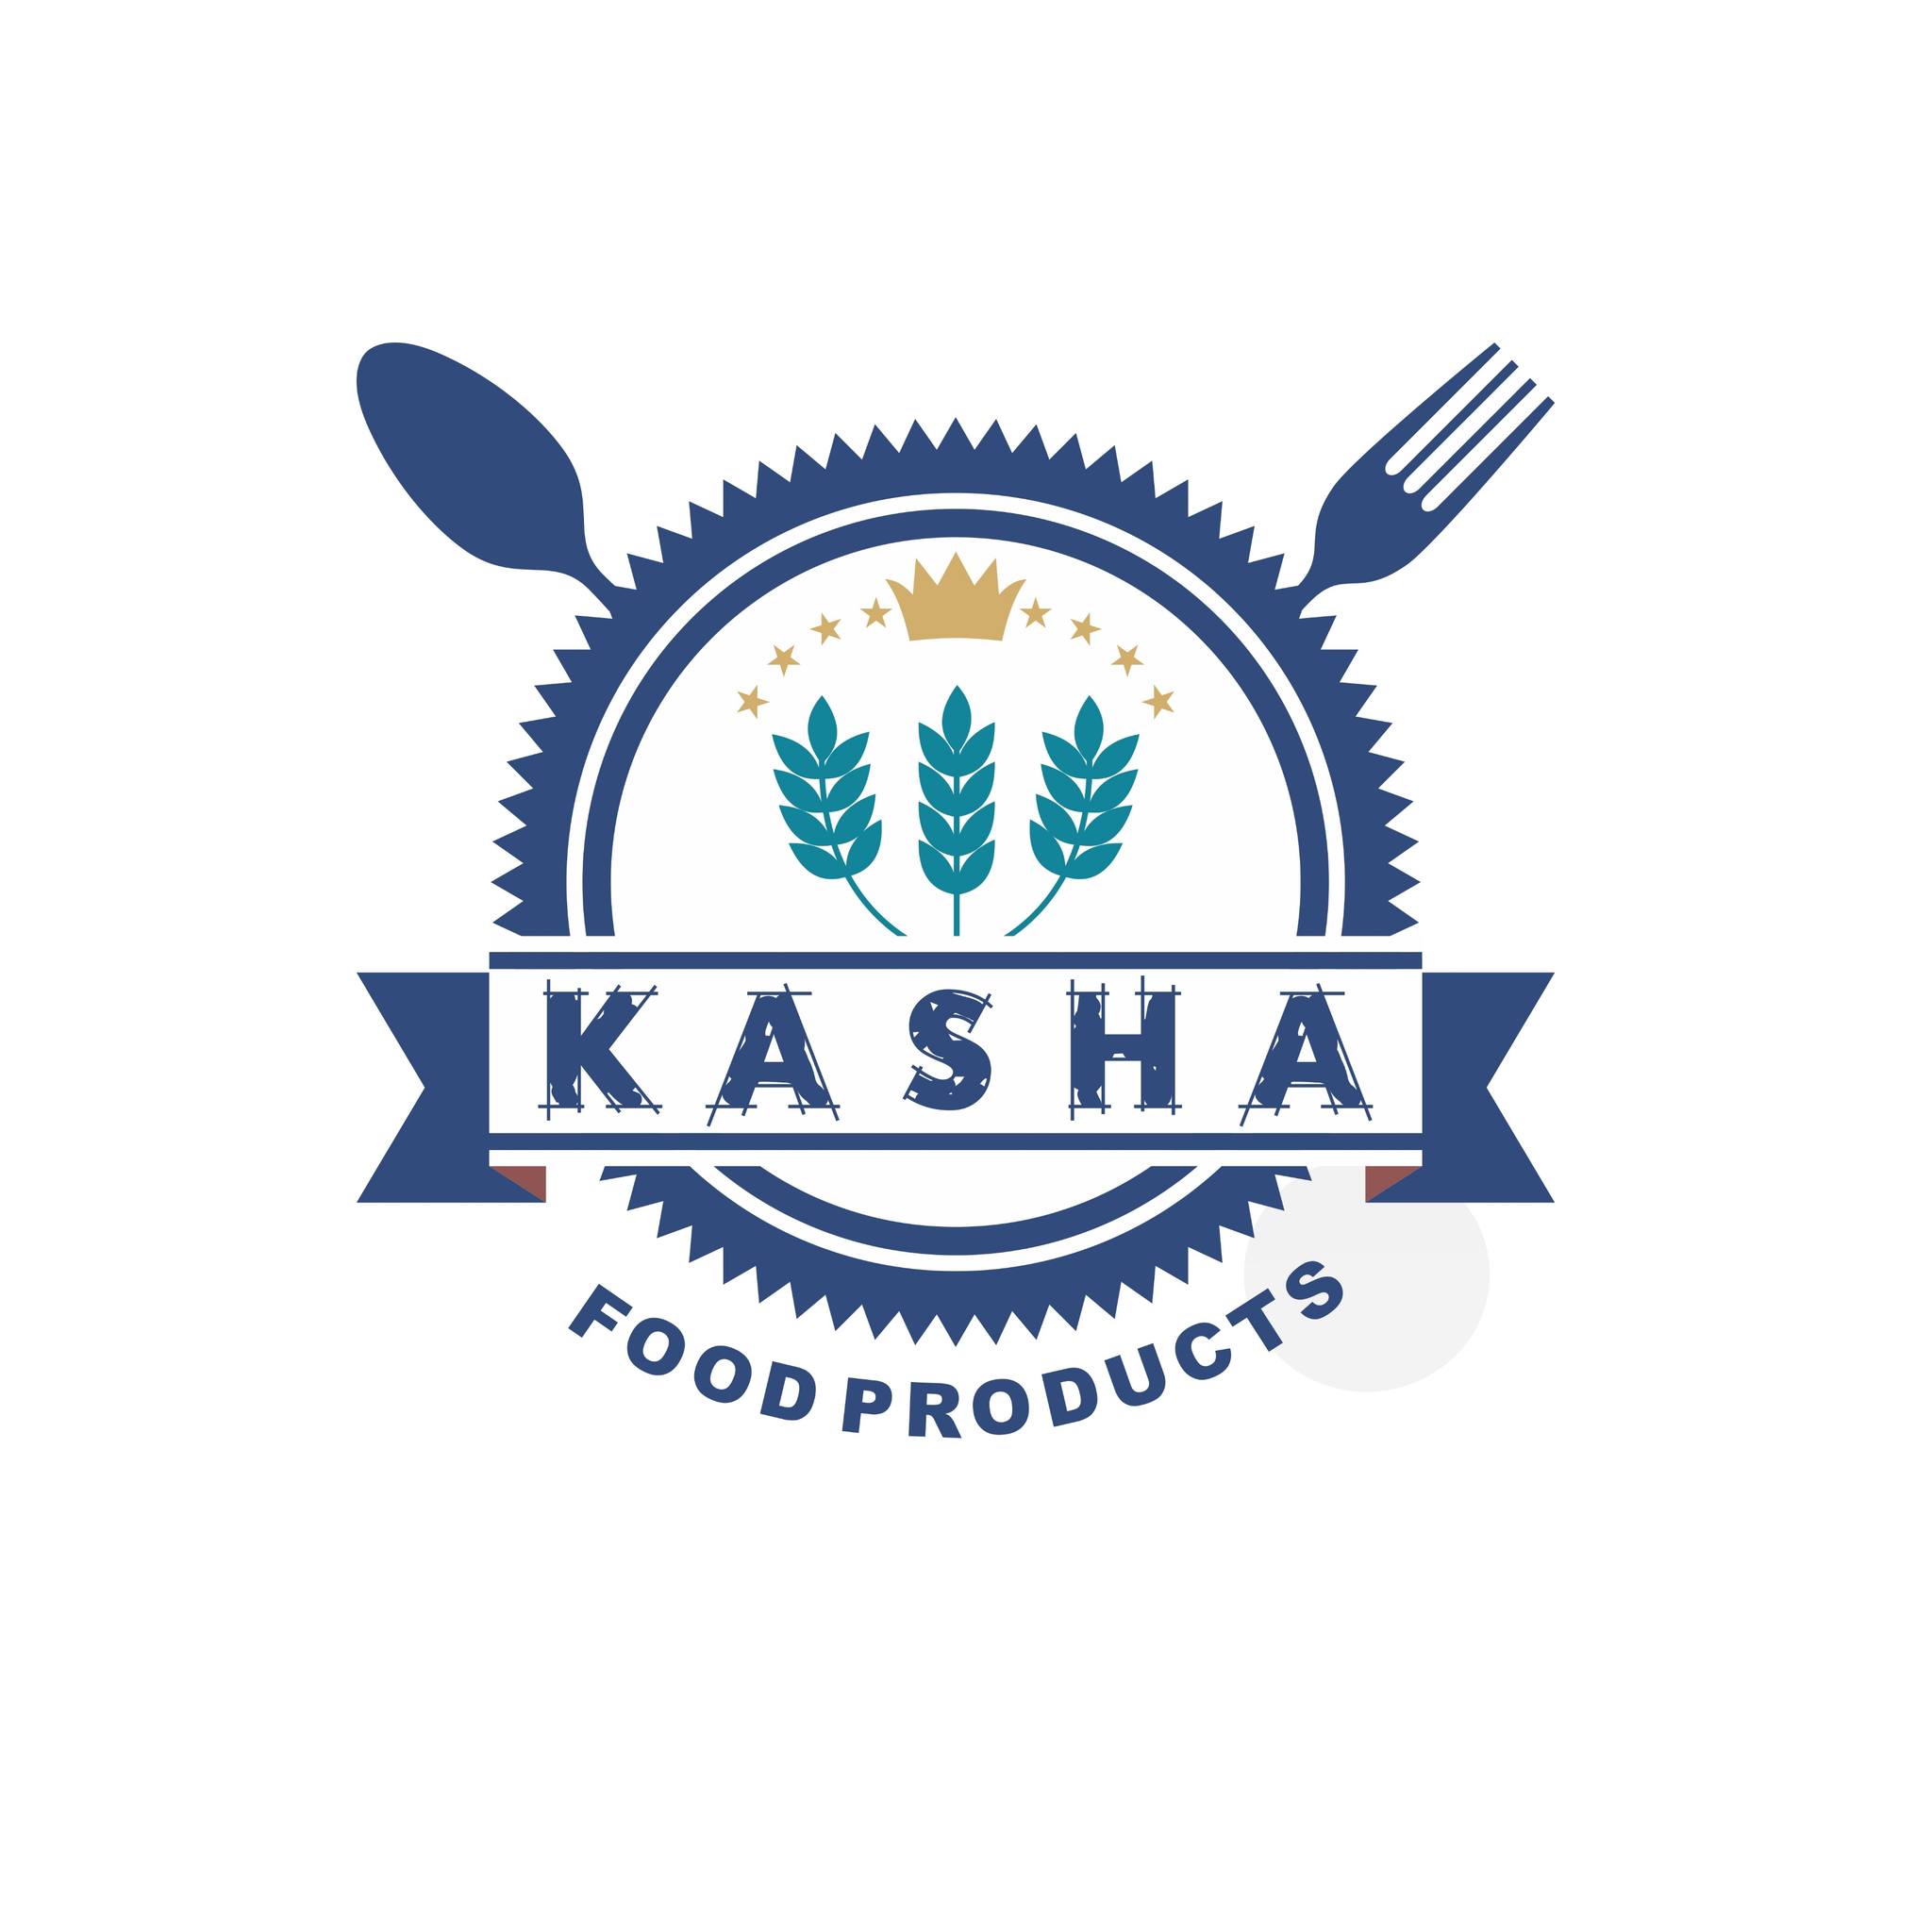 KASHA FOOD